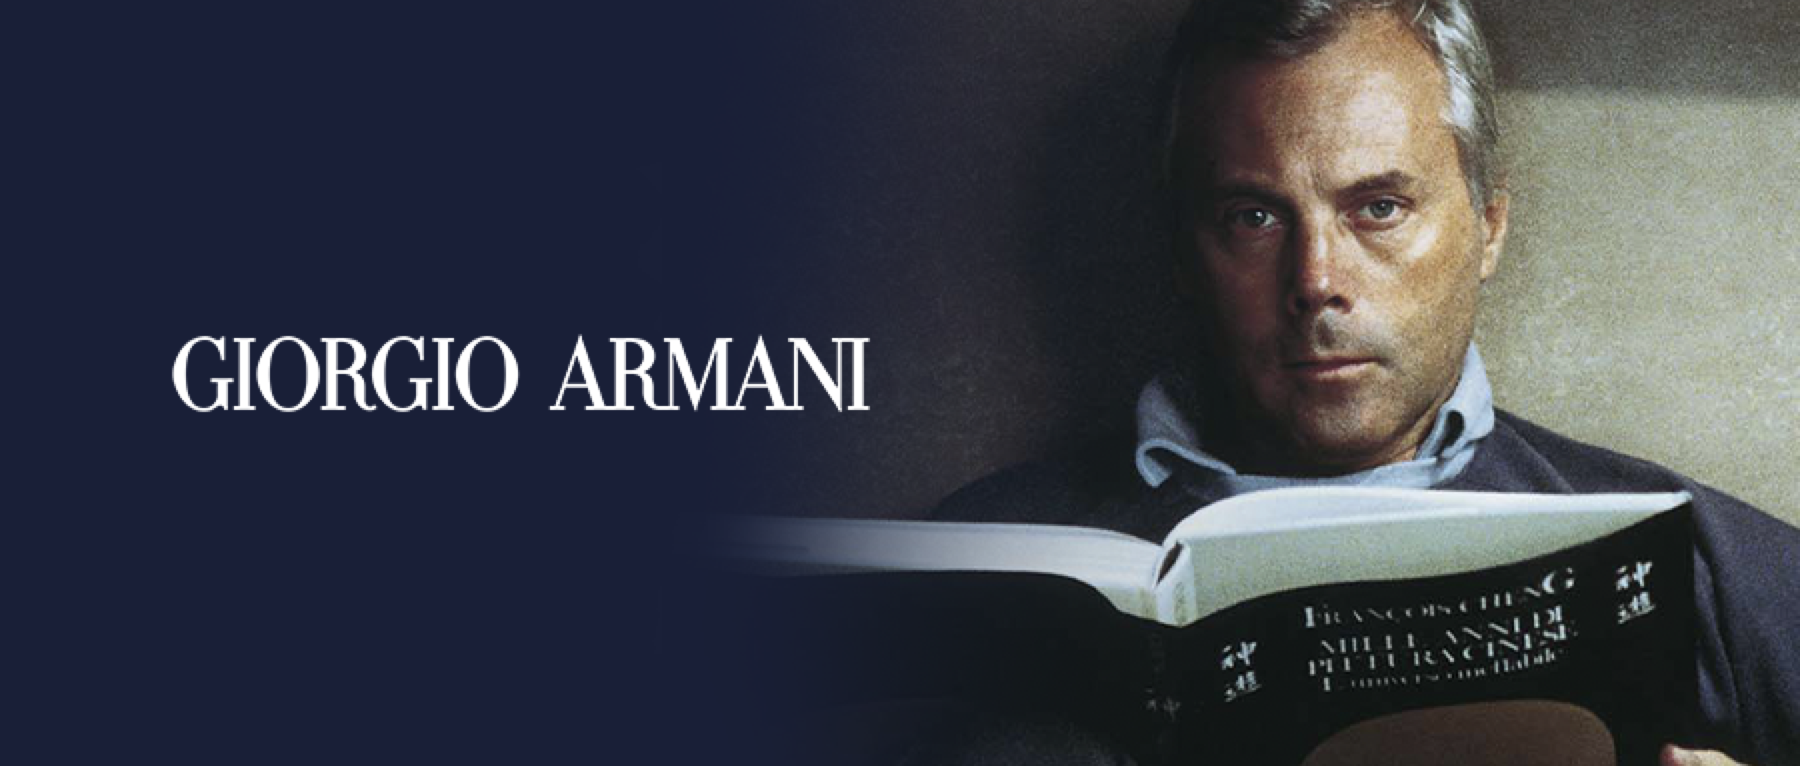 Vol.02 | Giorgio Armani Lexicon